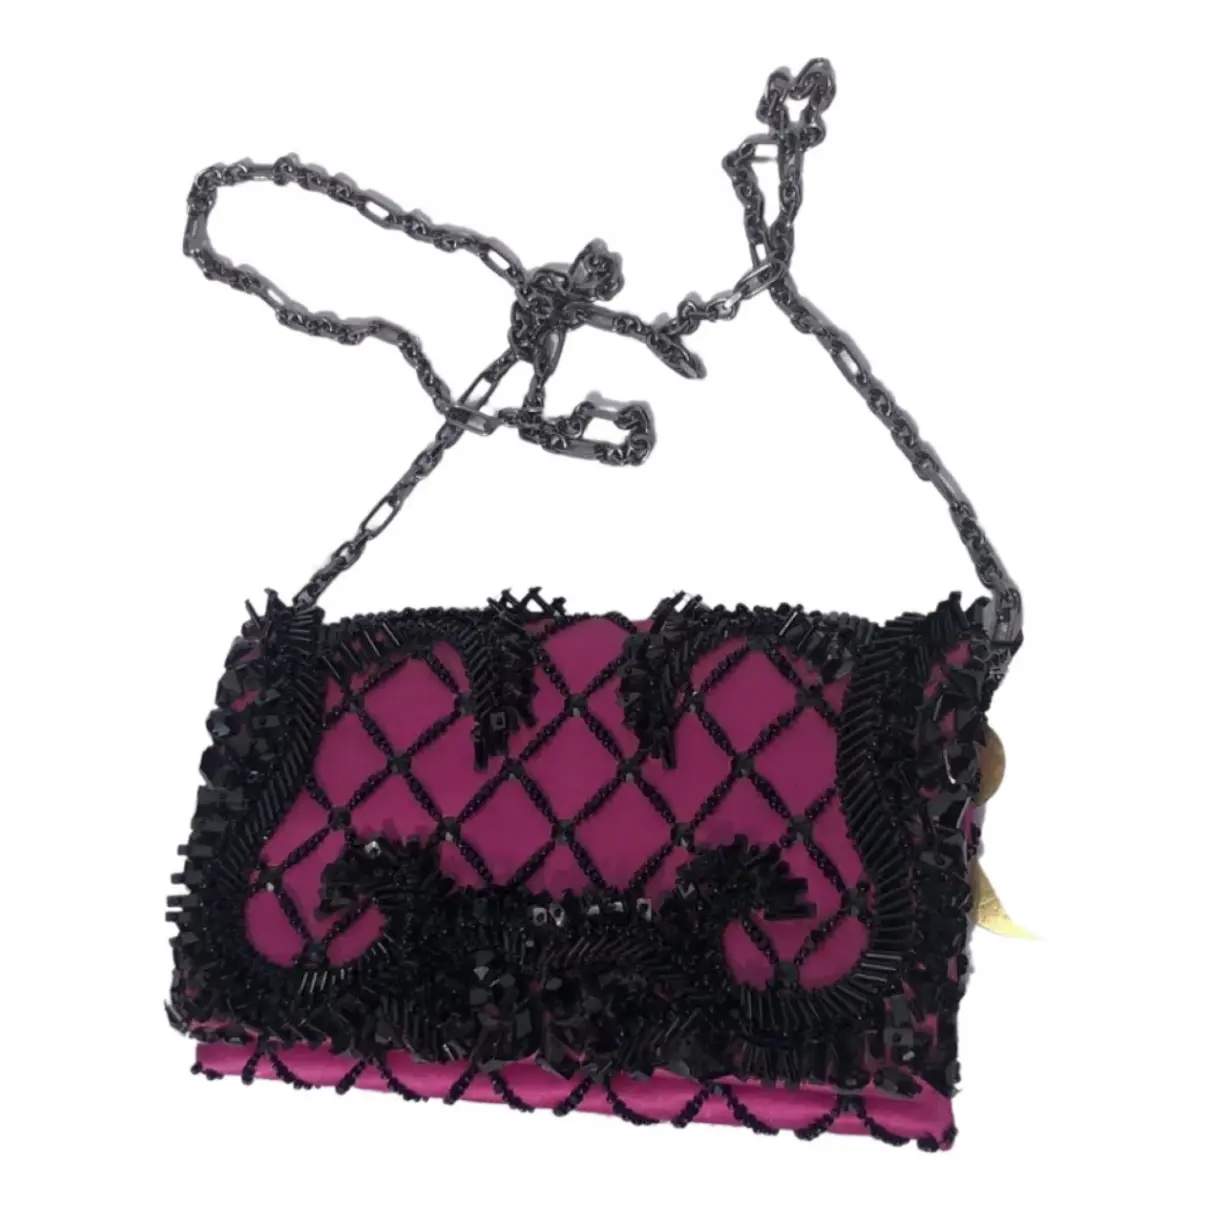 Silk handbag Oscar De La Renta